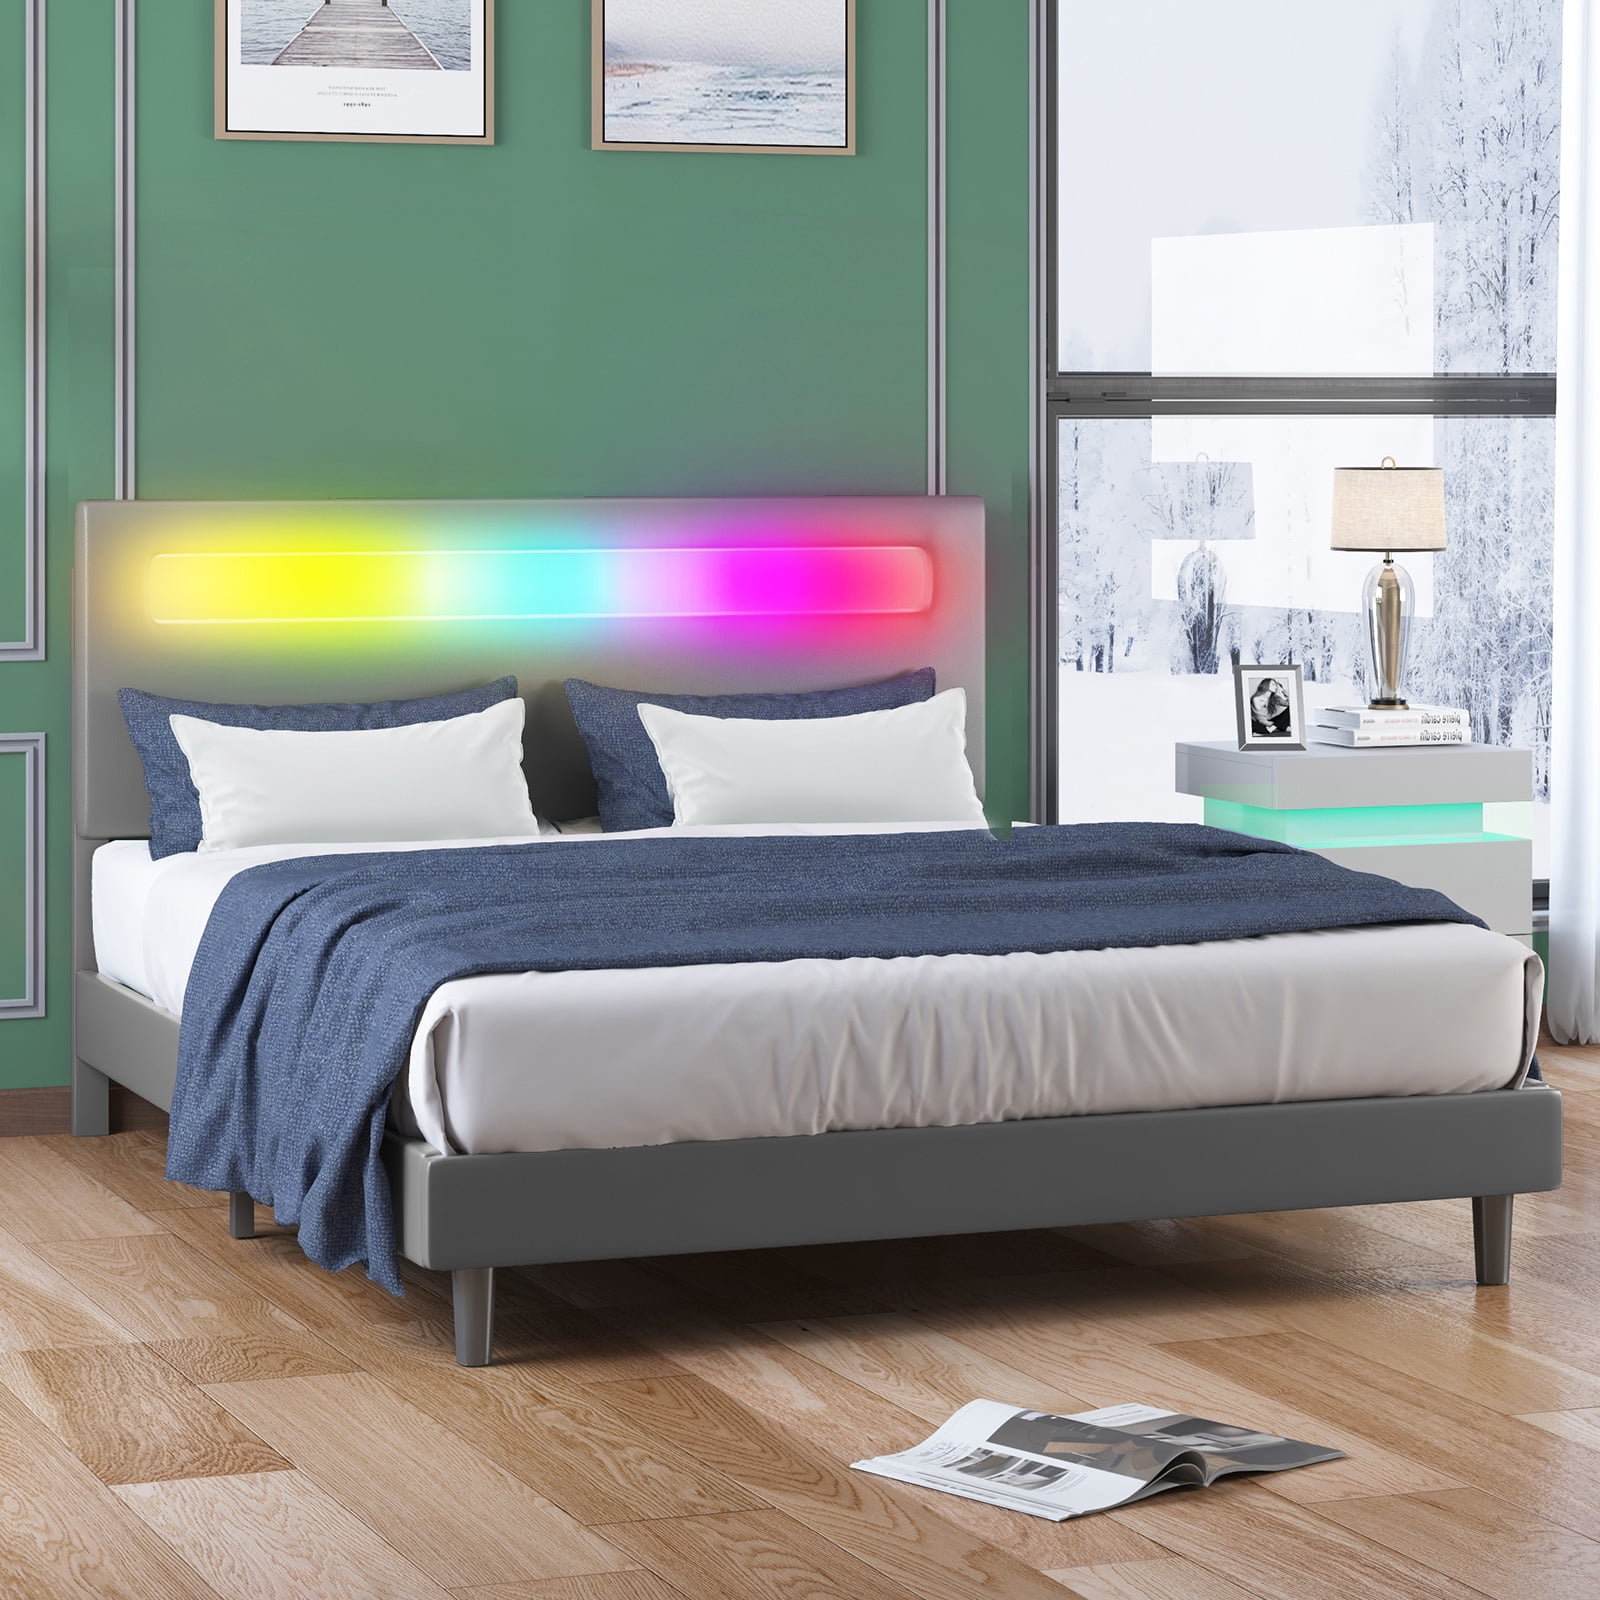 Mjkone Platform Bed Frame with Smart LED Strip Light, King Size Bed ...